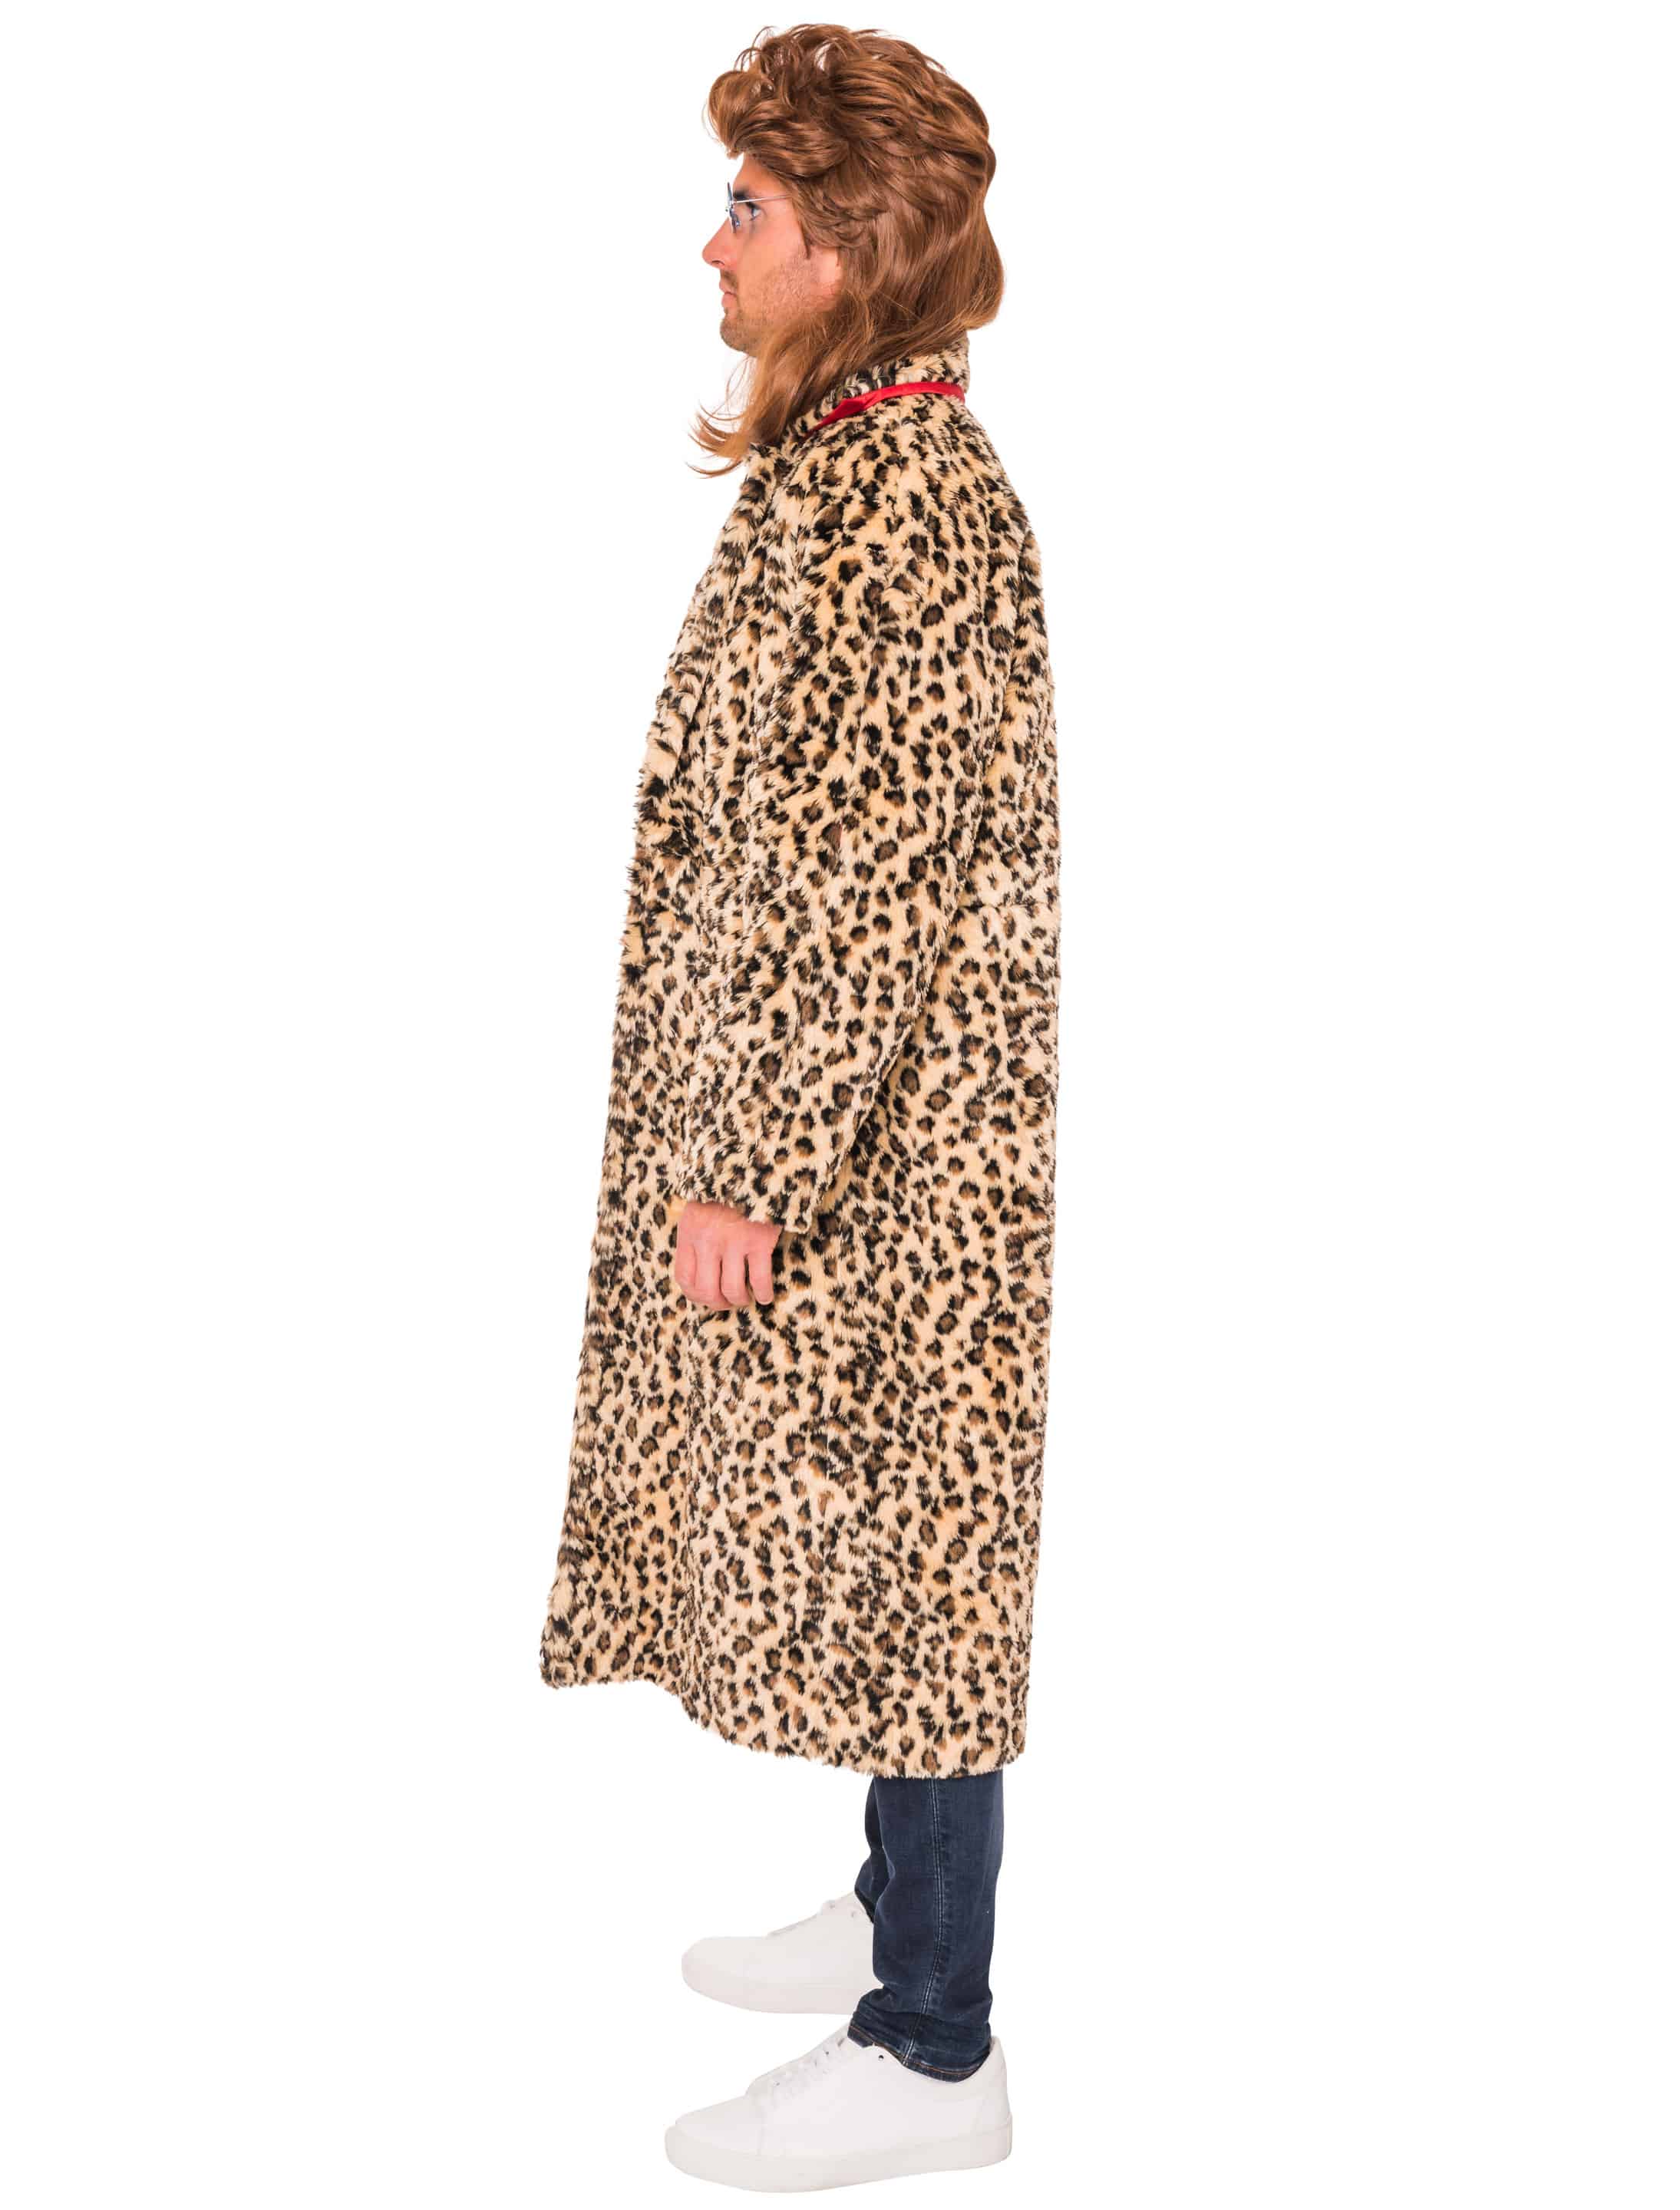 Mantel Leopardenmuster braun/schwarz S/M